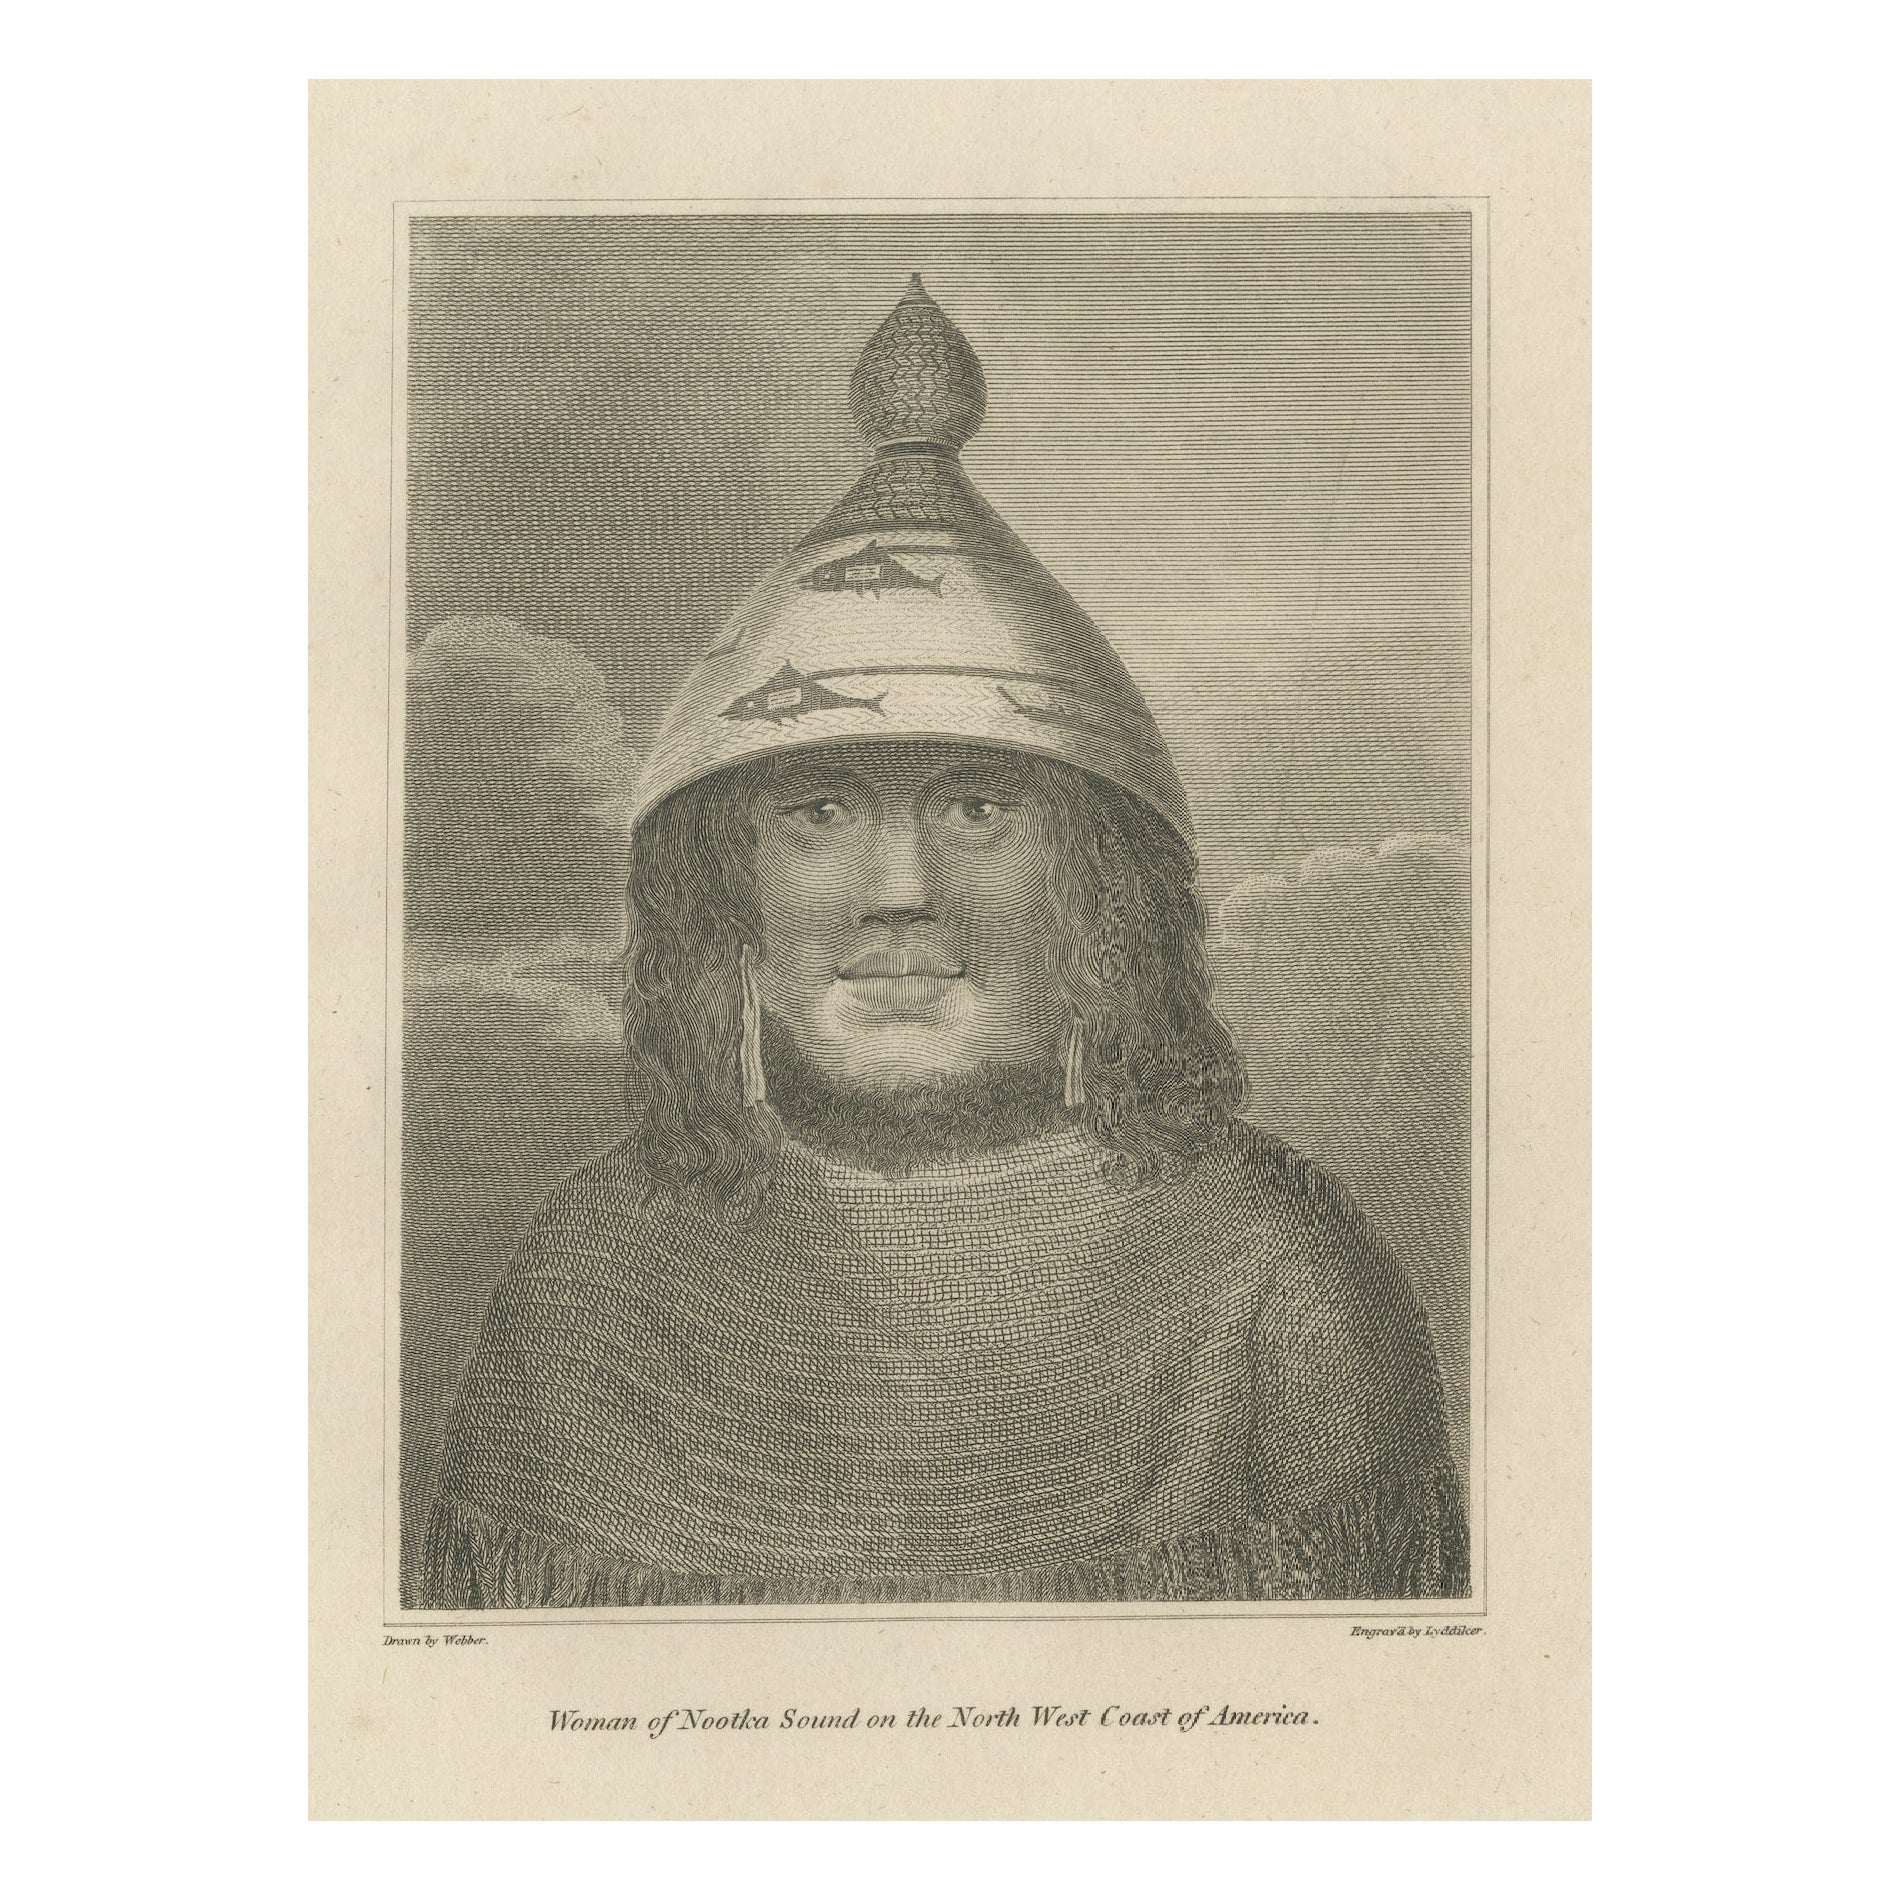 Wächter des Nootka Sound: Eine Lyddiker-Radierung aus John Webbers Kunstwerk, 1795